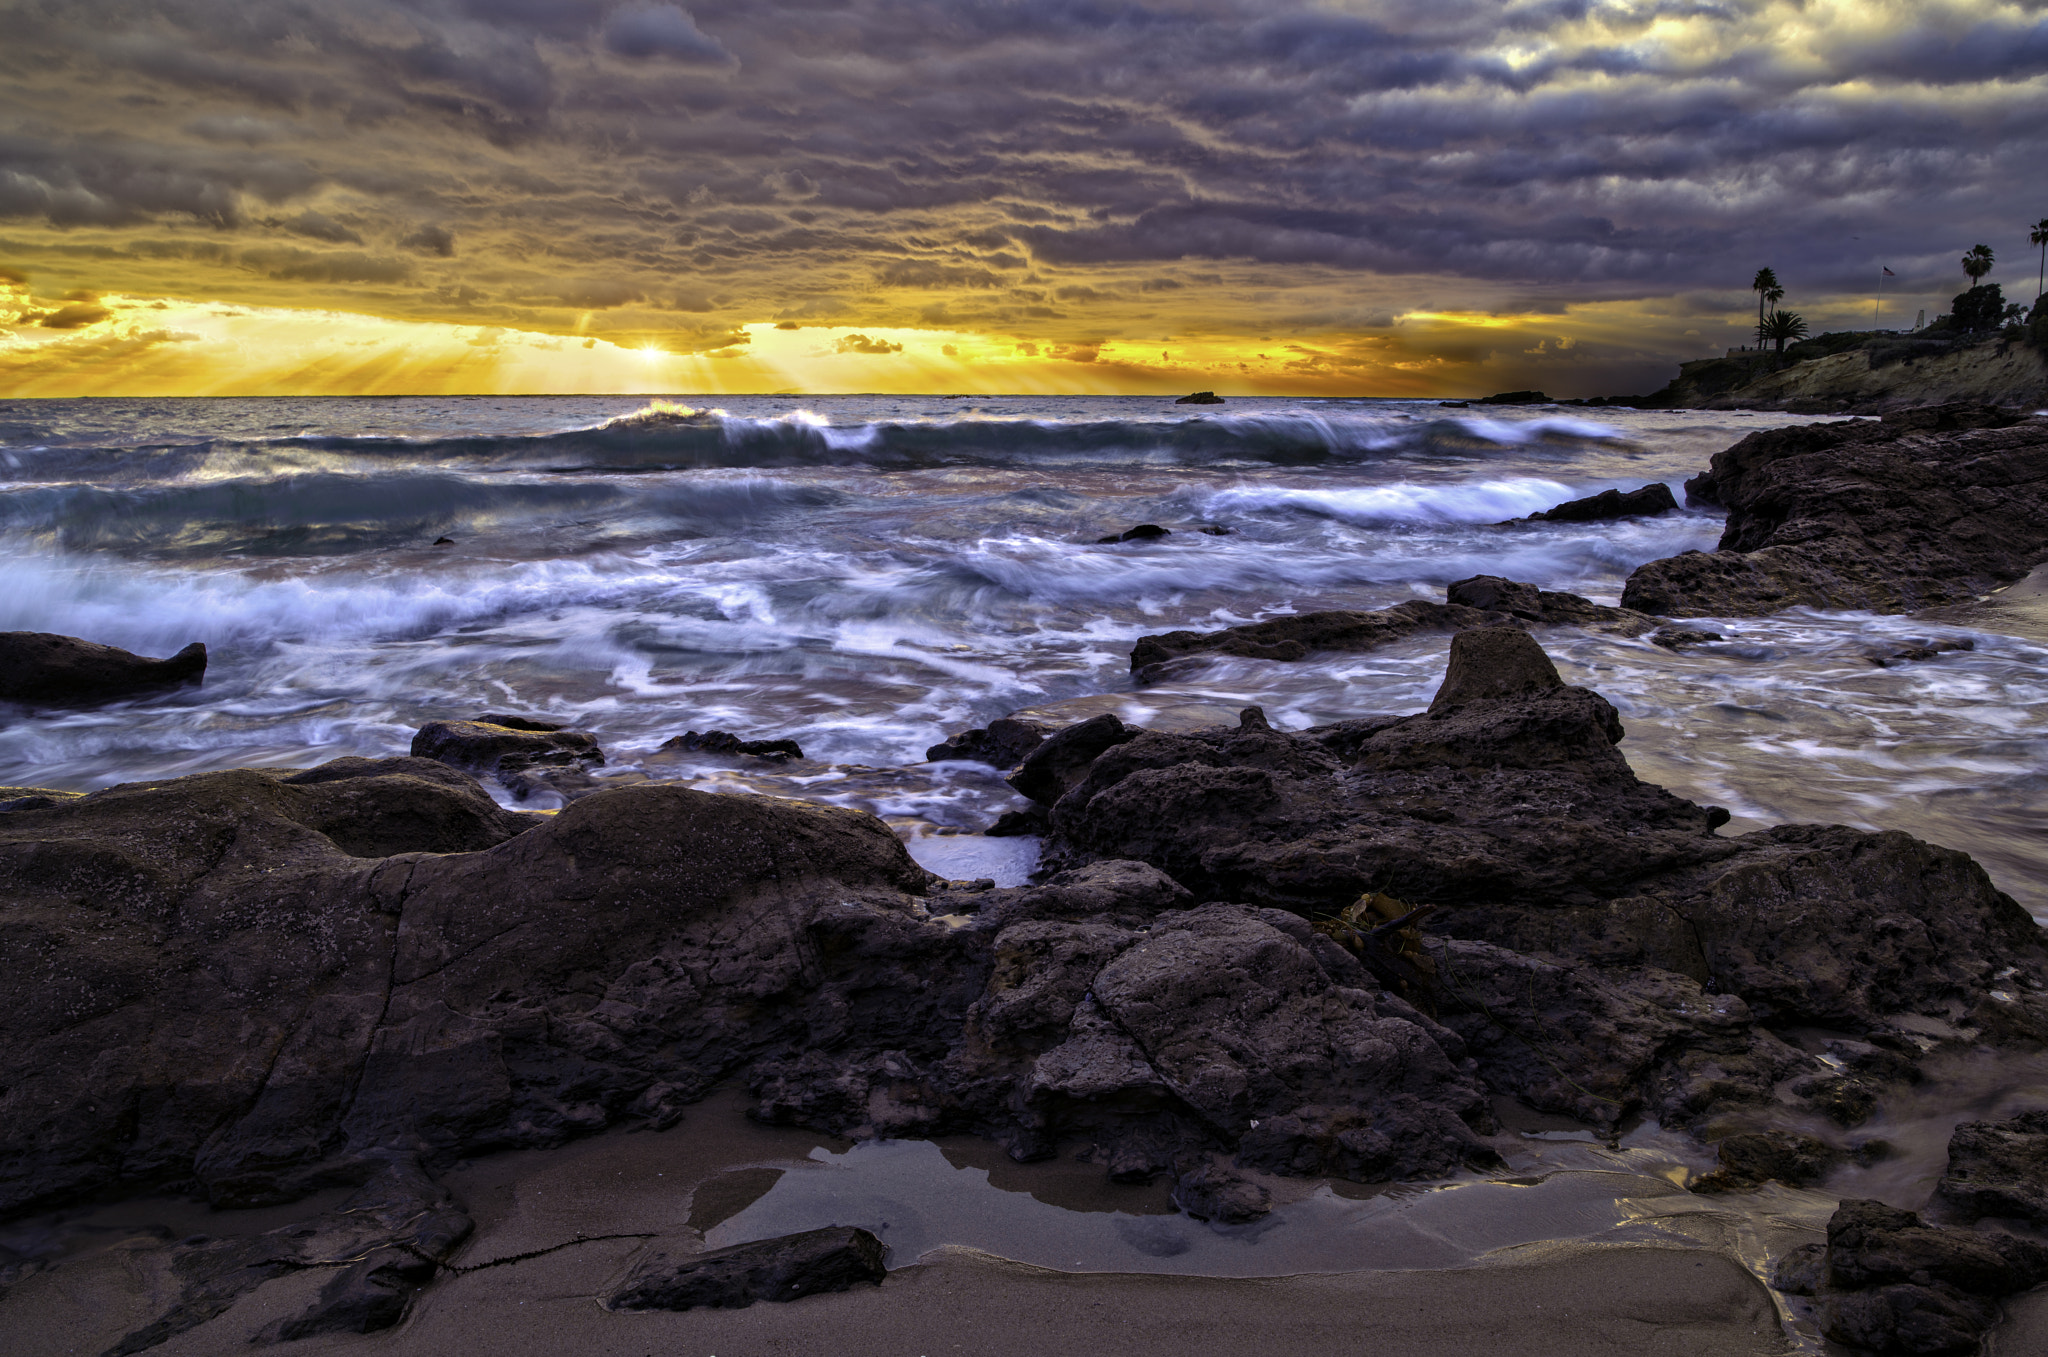 Pentax 645Z + HD Pentax-DA645 28-45mm F4.5ED AW SR sample photo. Laguna beach sunset photography